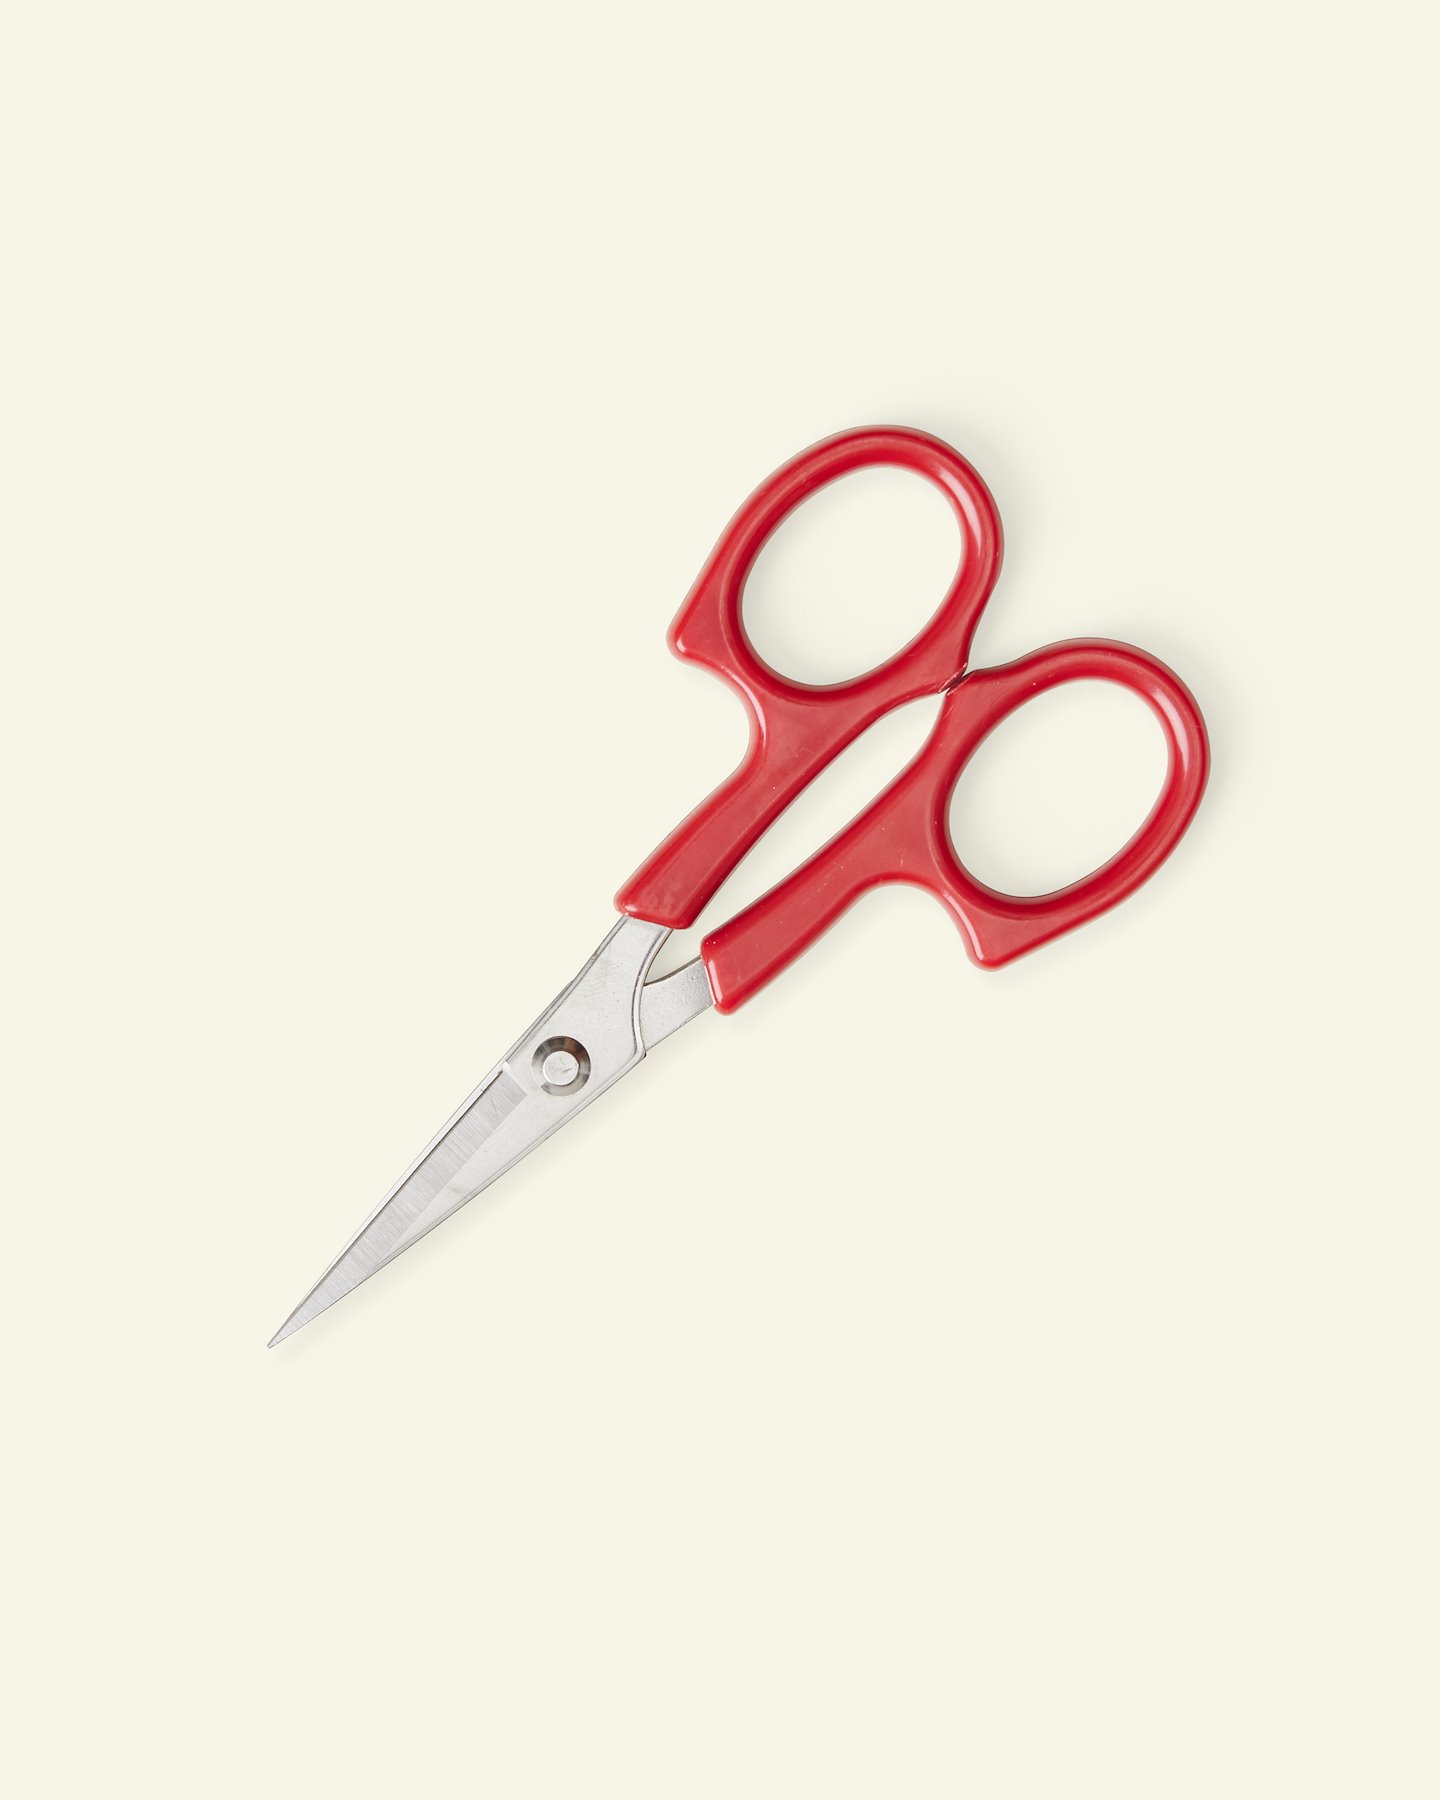 KAI tailor scissors 25cm